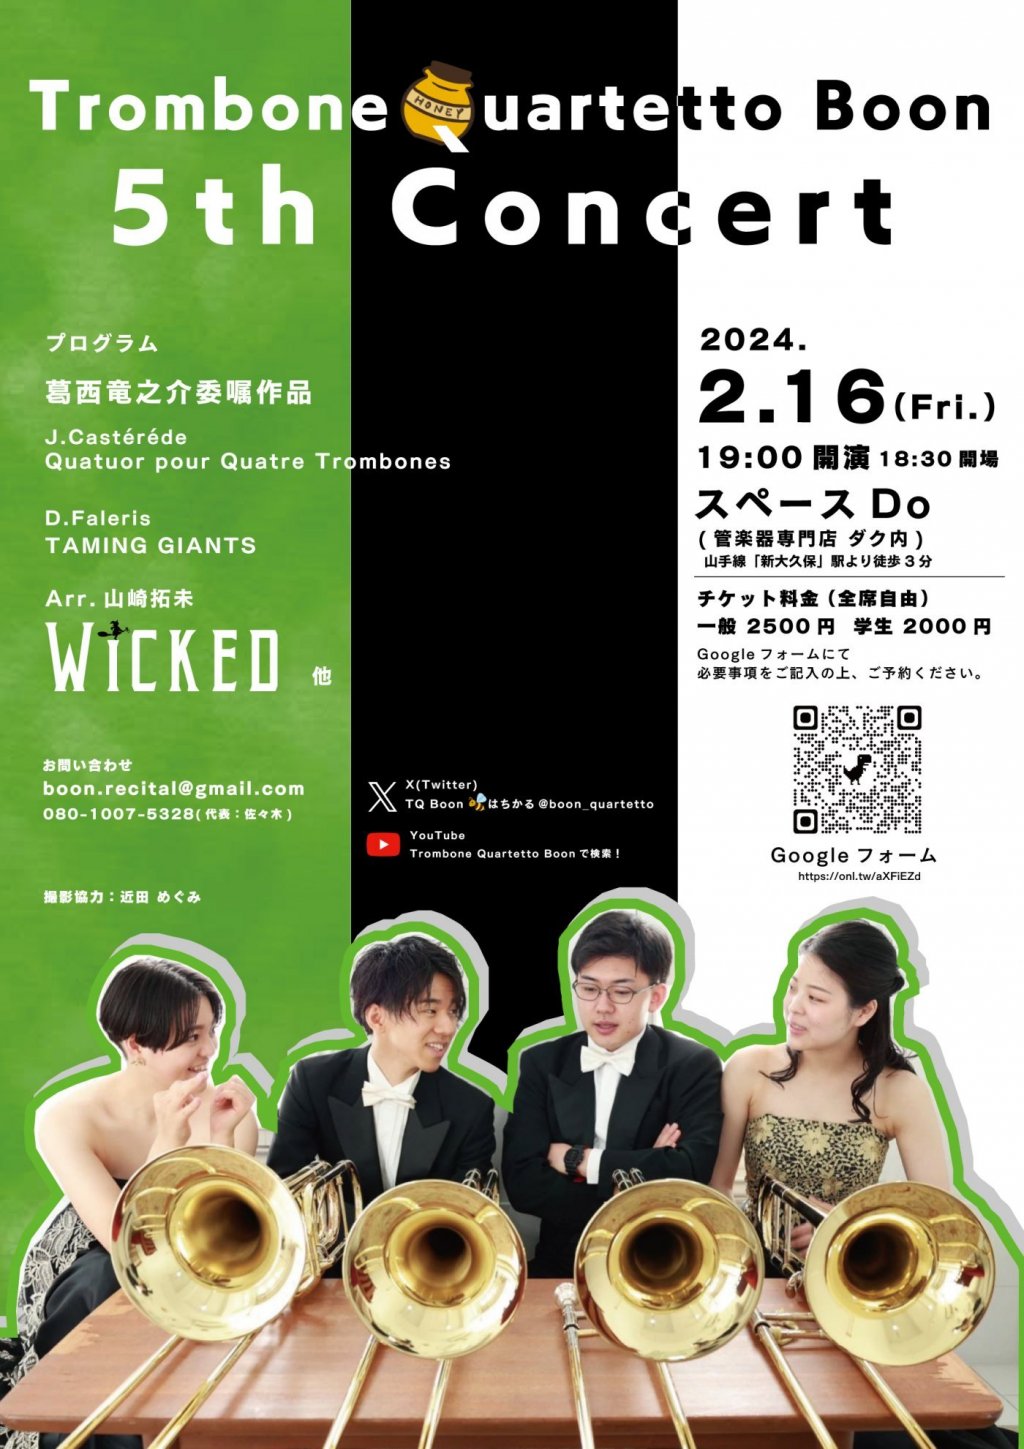 Trombone Quartetto Boon 5th Concert